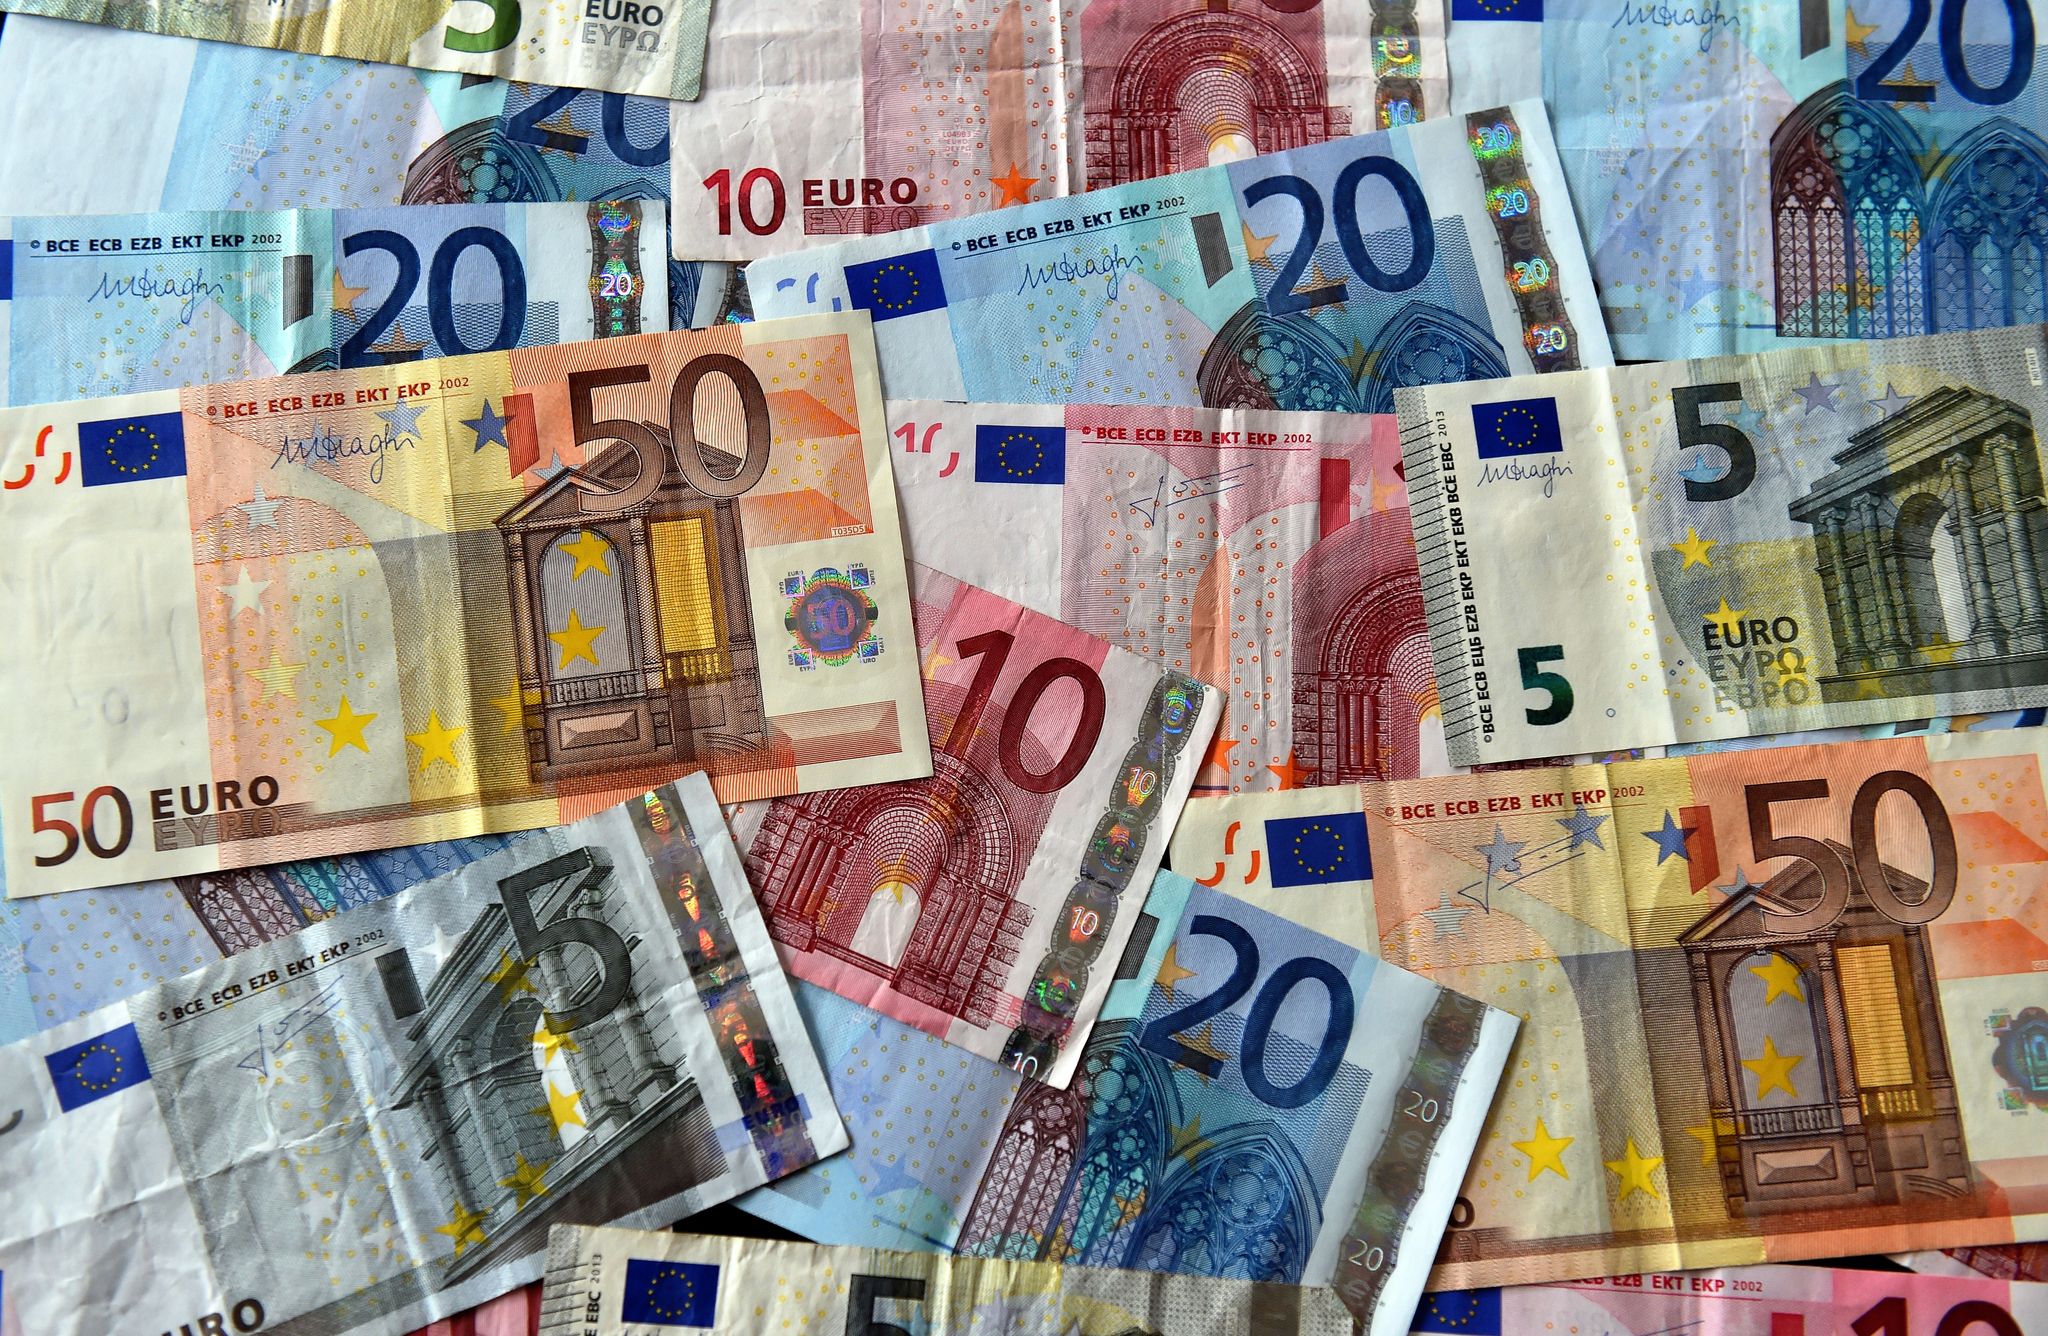 Le nouveau billet de 10 euros, une production auvergnate